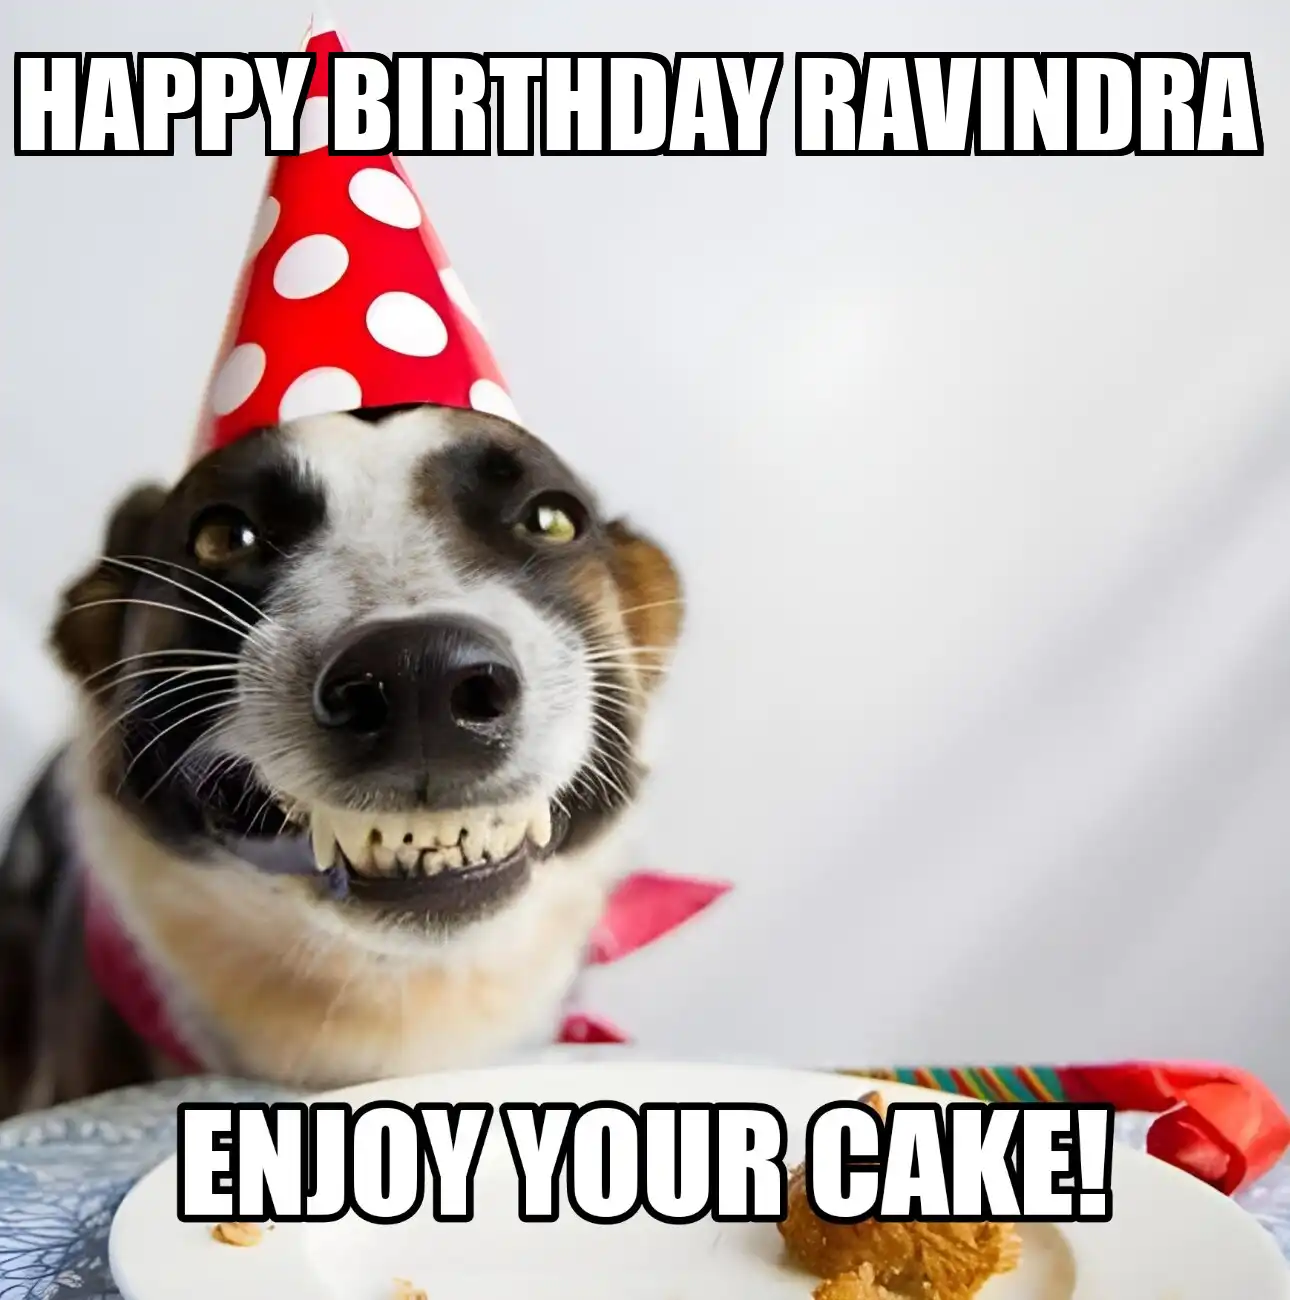 Happy Birthday Ravindra Enjoy Your Cake Dog Meme